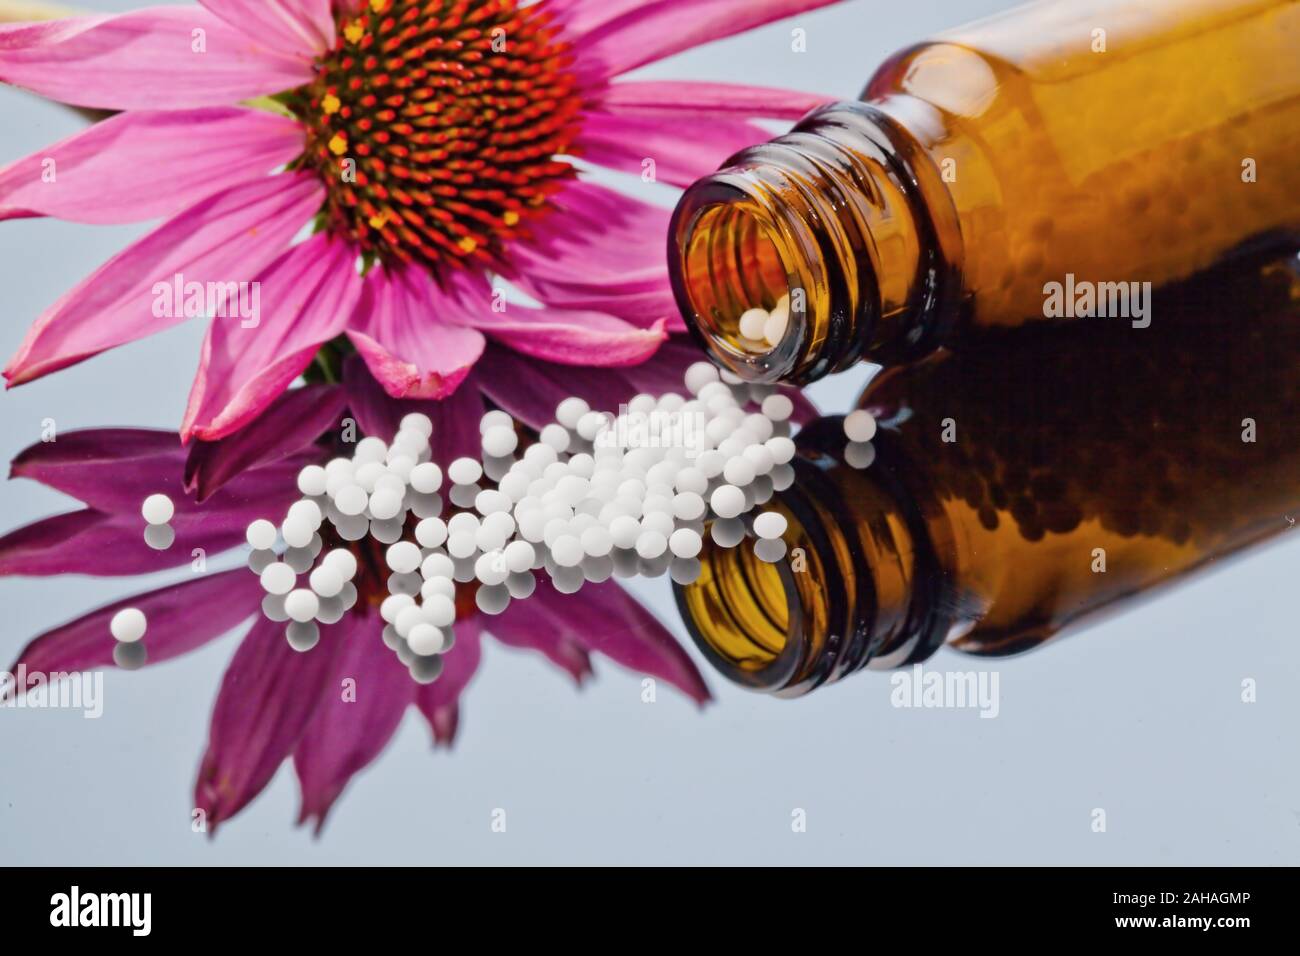 Globuli zur Behandlung von Krankheiten in der sanften, alternativen Medizin. Tabletten und Medikamente. Stock Photo